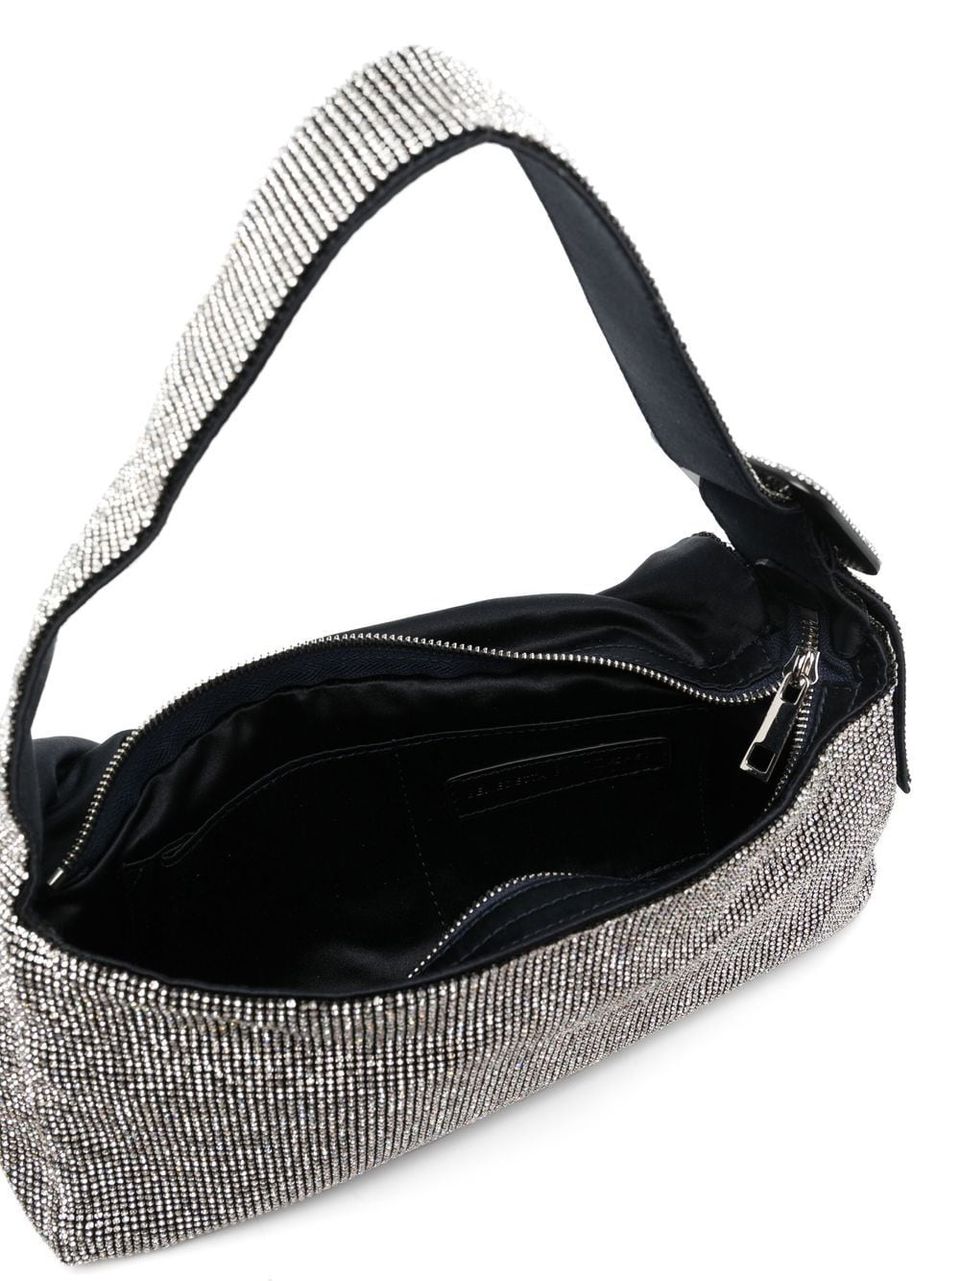 'Vitty La Grande' crystal shoulder bag